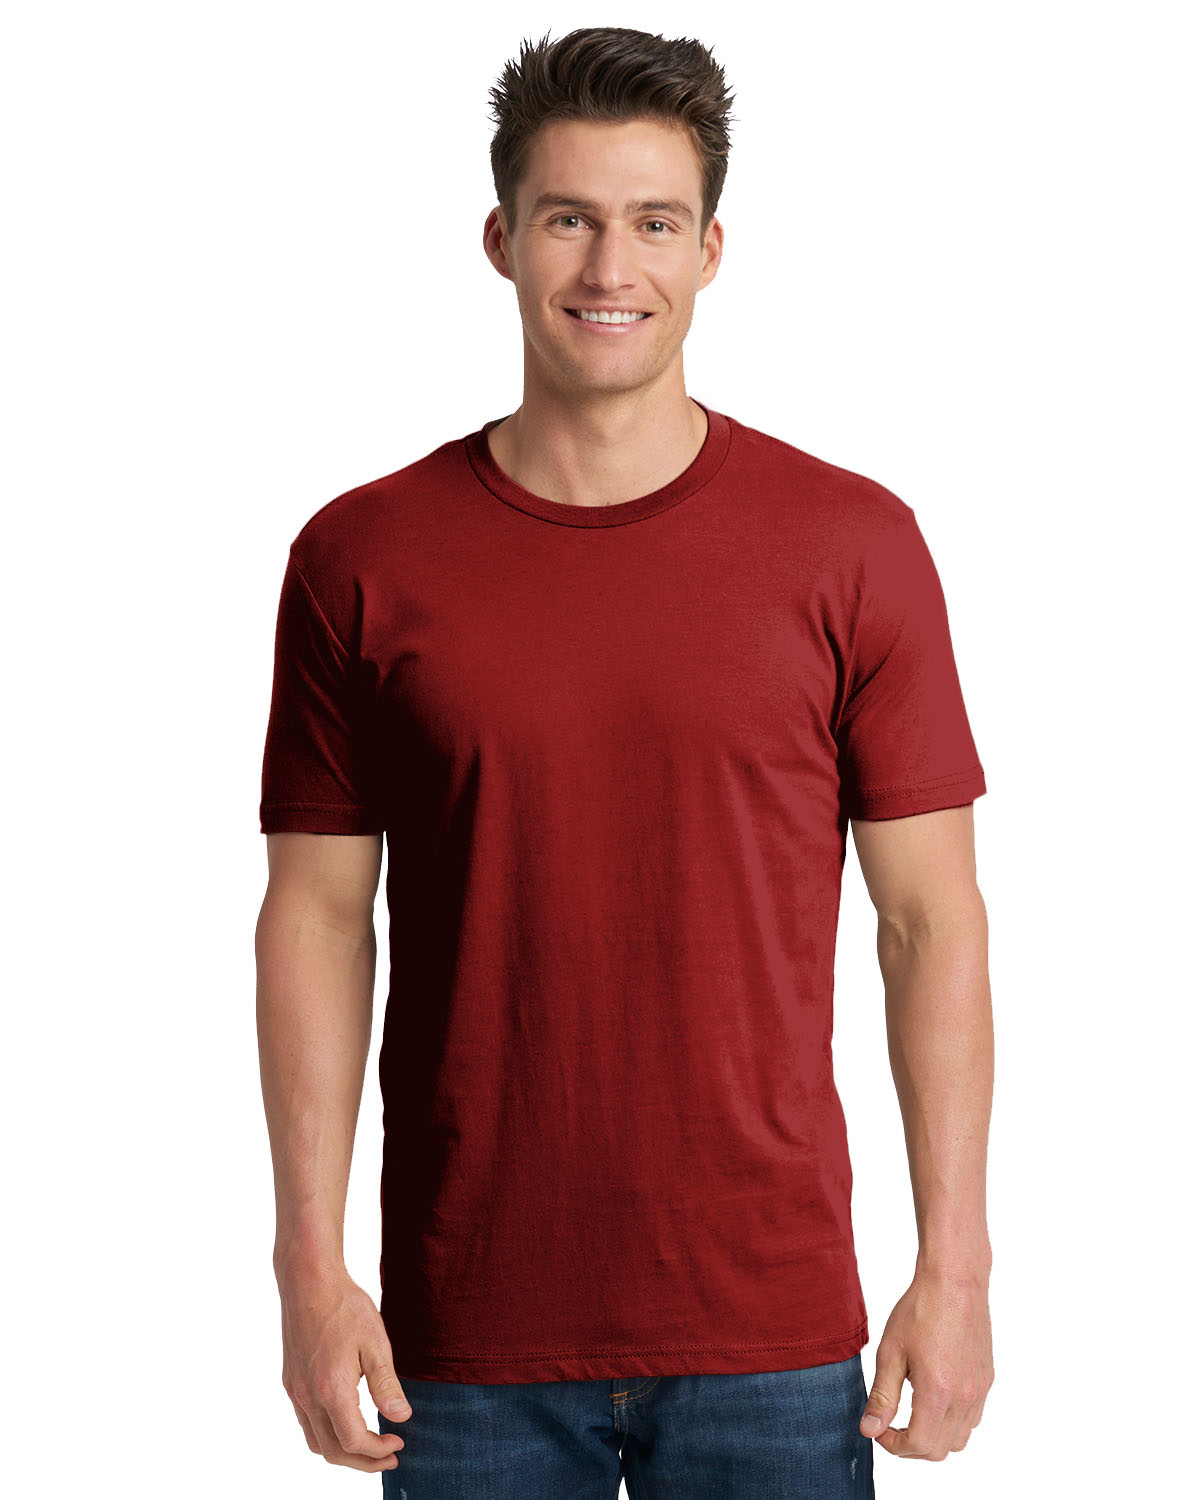 Next Level Unisex Cotton T-Shirt | 3600